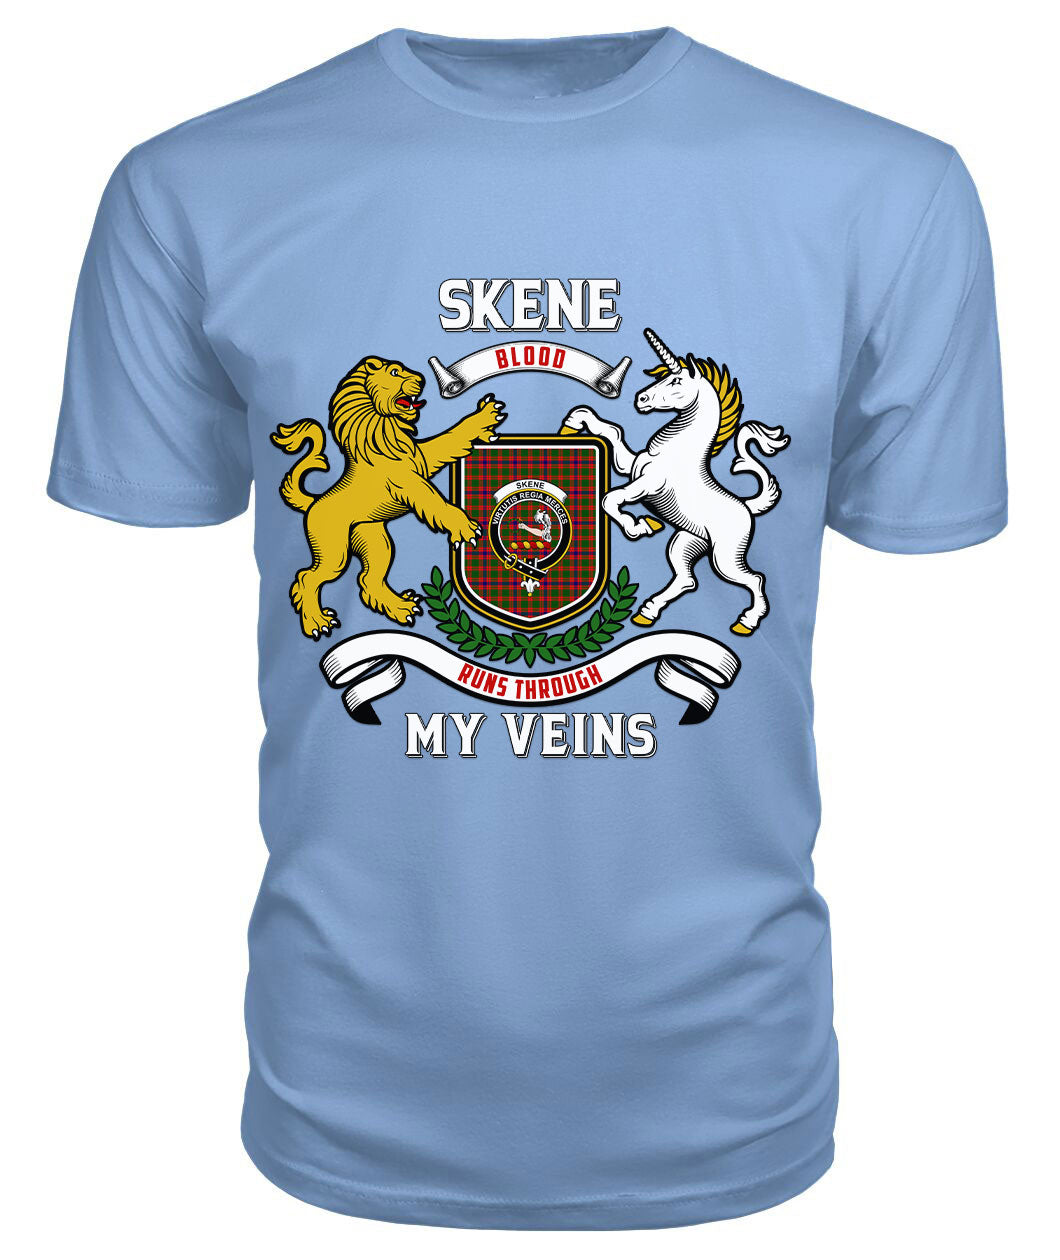 Skene Modern Tartan Crest 2D T-shirt - Blood Runs Through My Veins Style